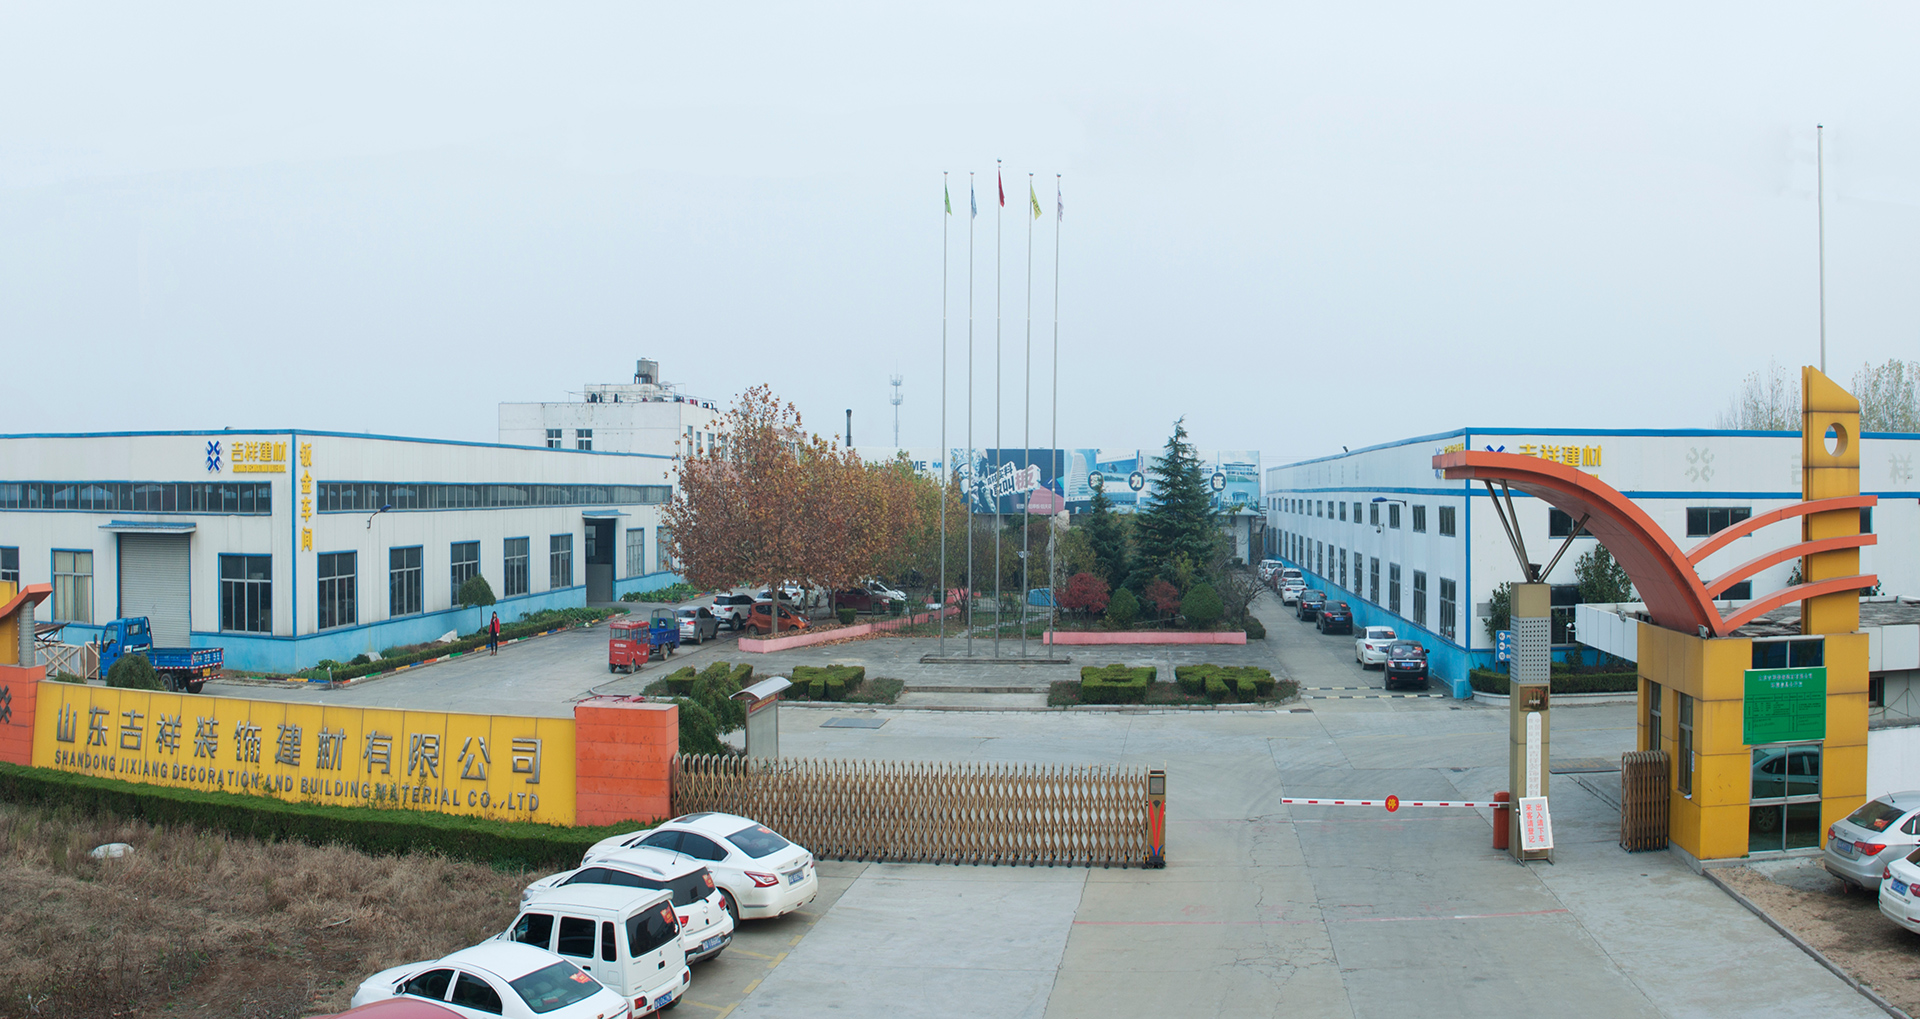 铝单板厂家无底线低价竞争正在毁掉中国铝幕墙行业